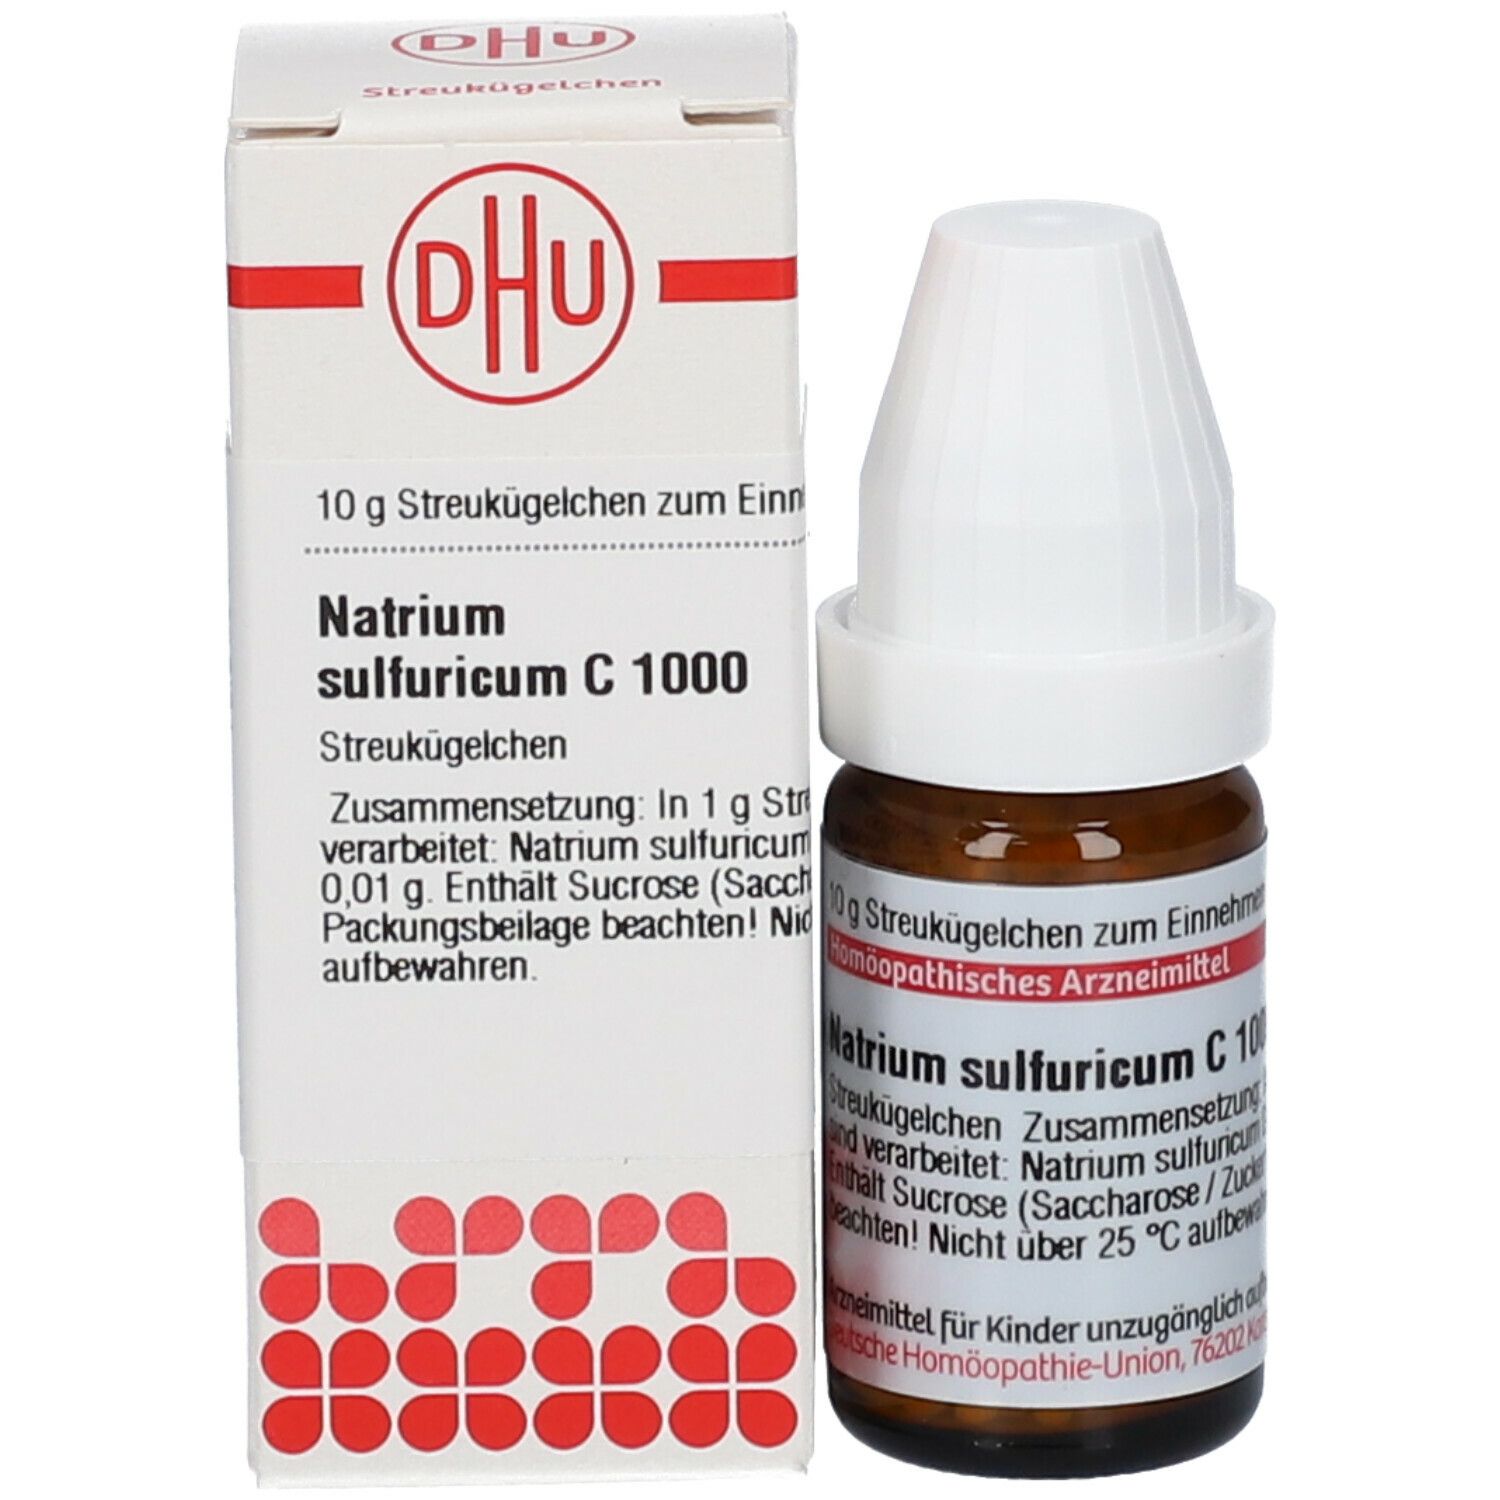 DHU Natrium Sulfuricum C1000